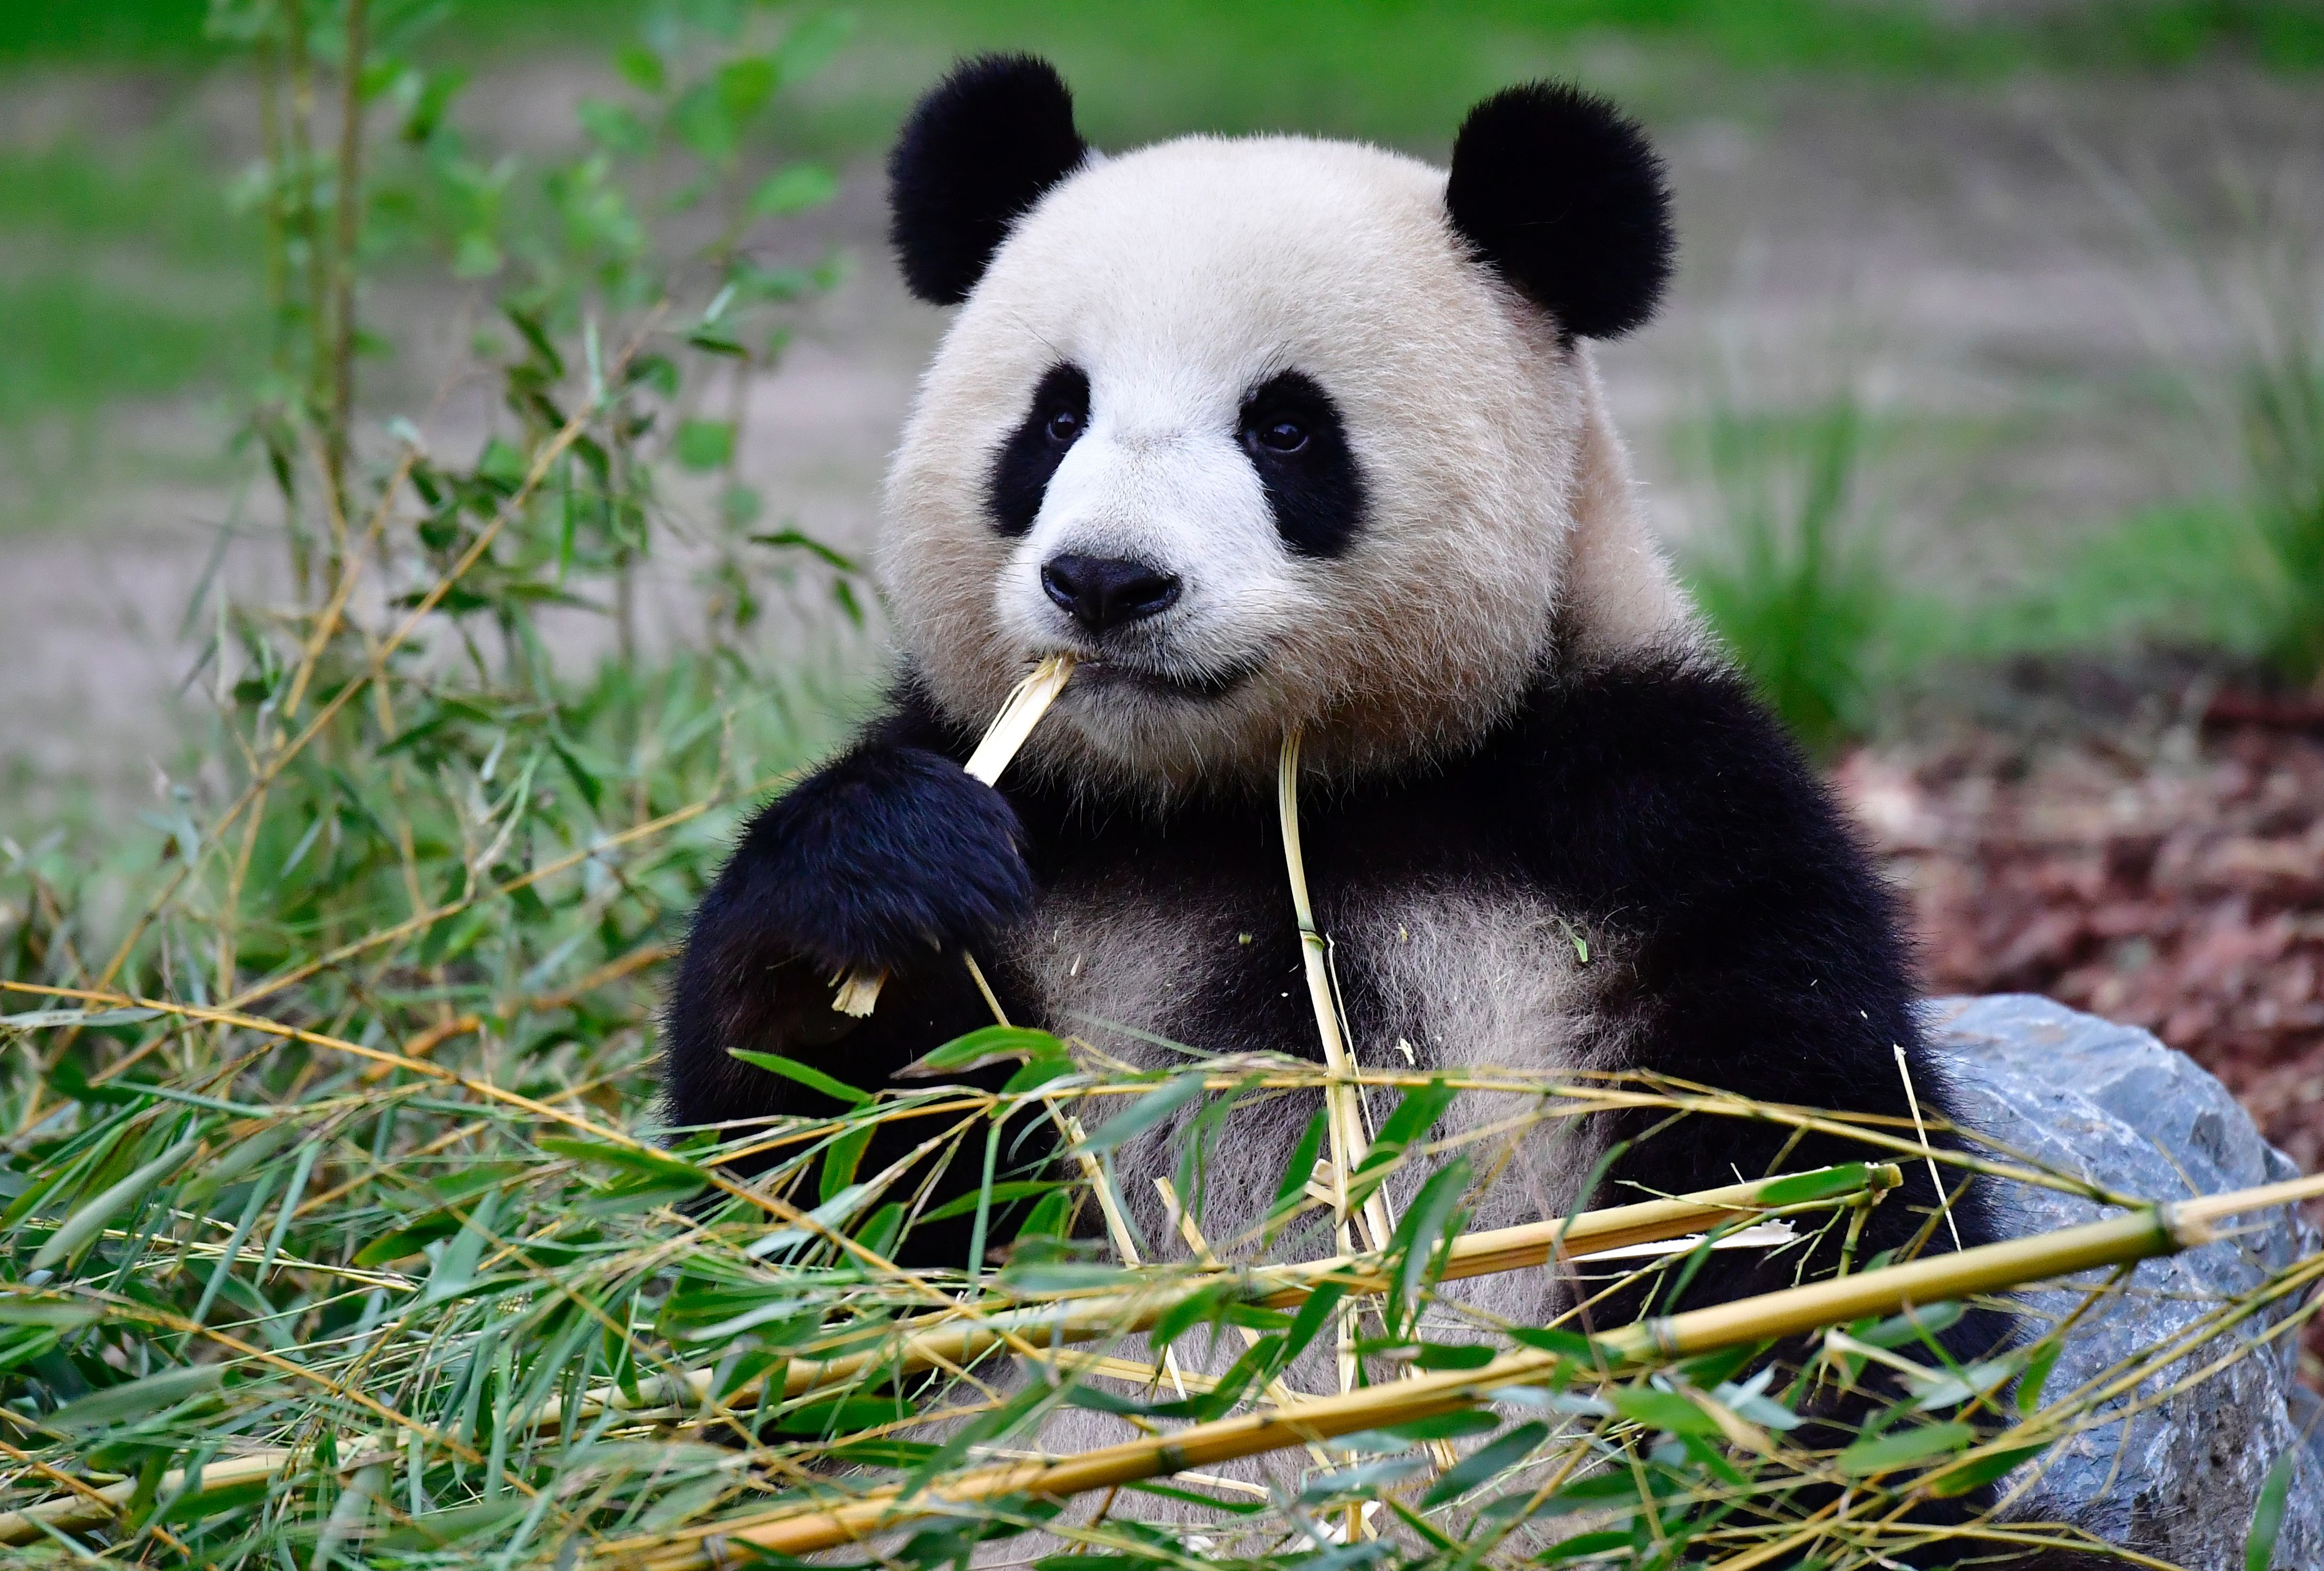 A panda bear.